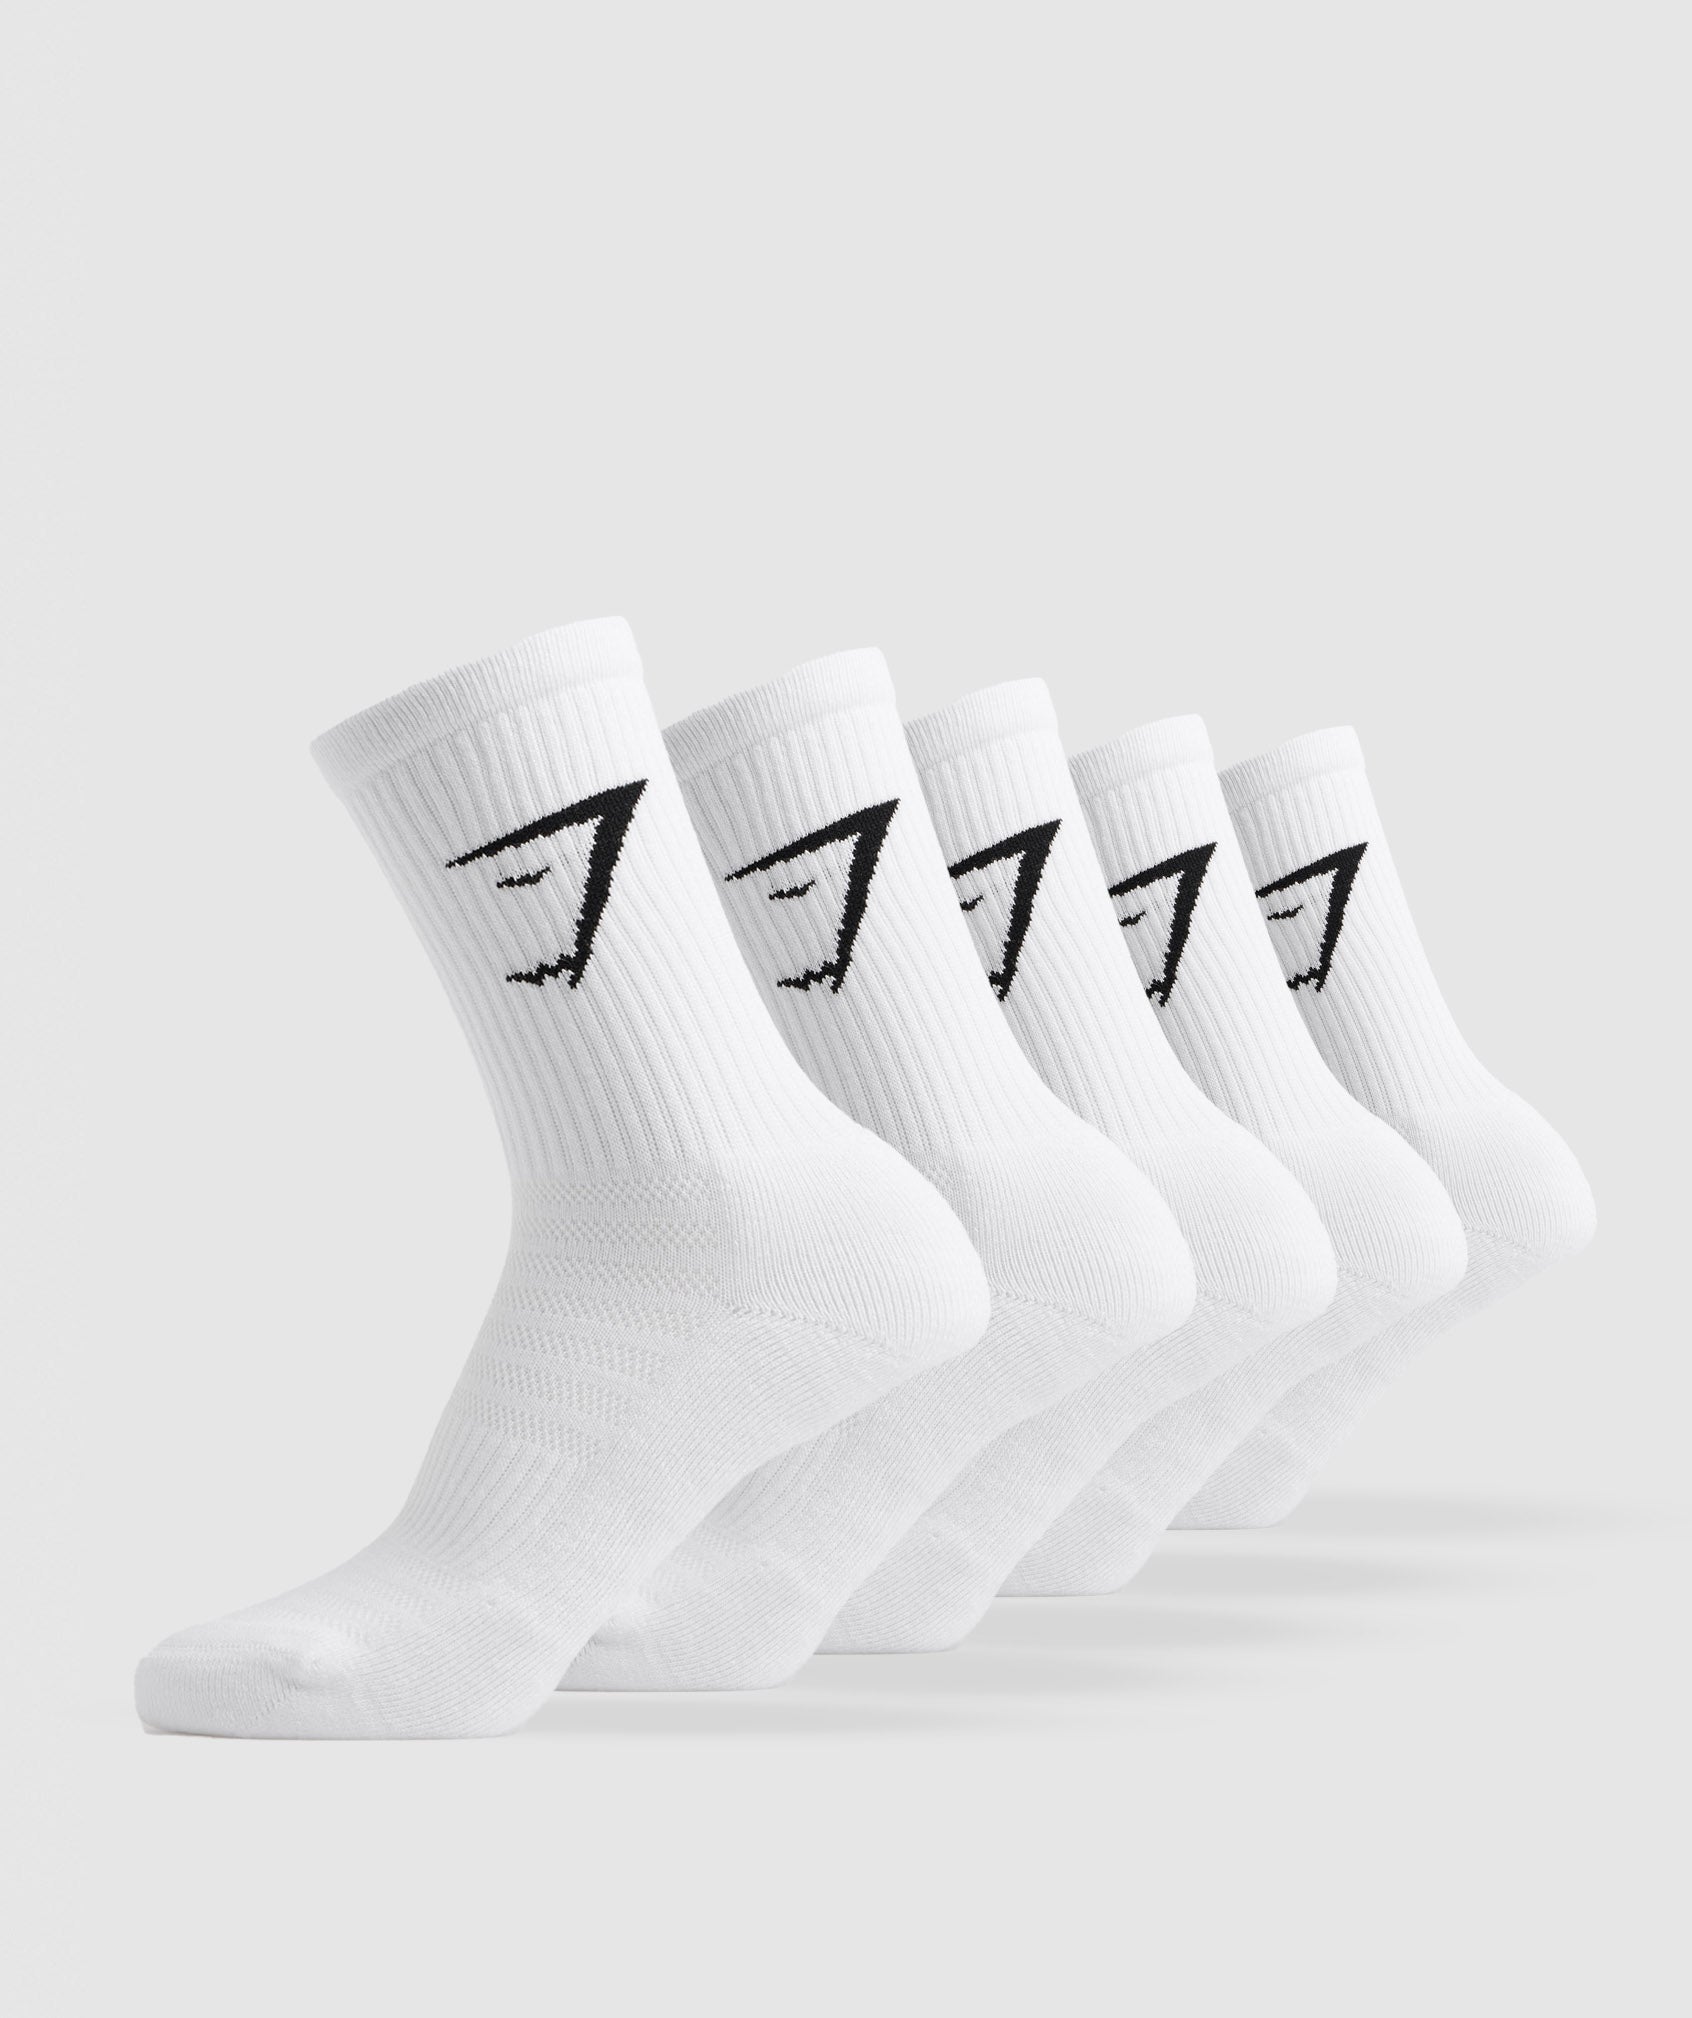 Gymshark Crew Socks 5pk - White/Black/Light Grey Marl